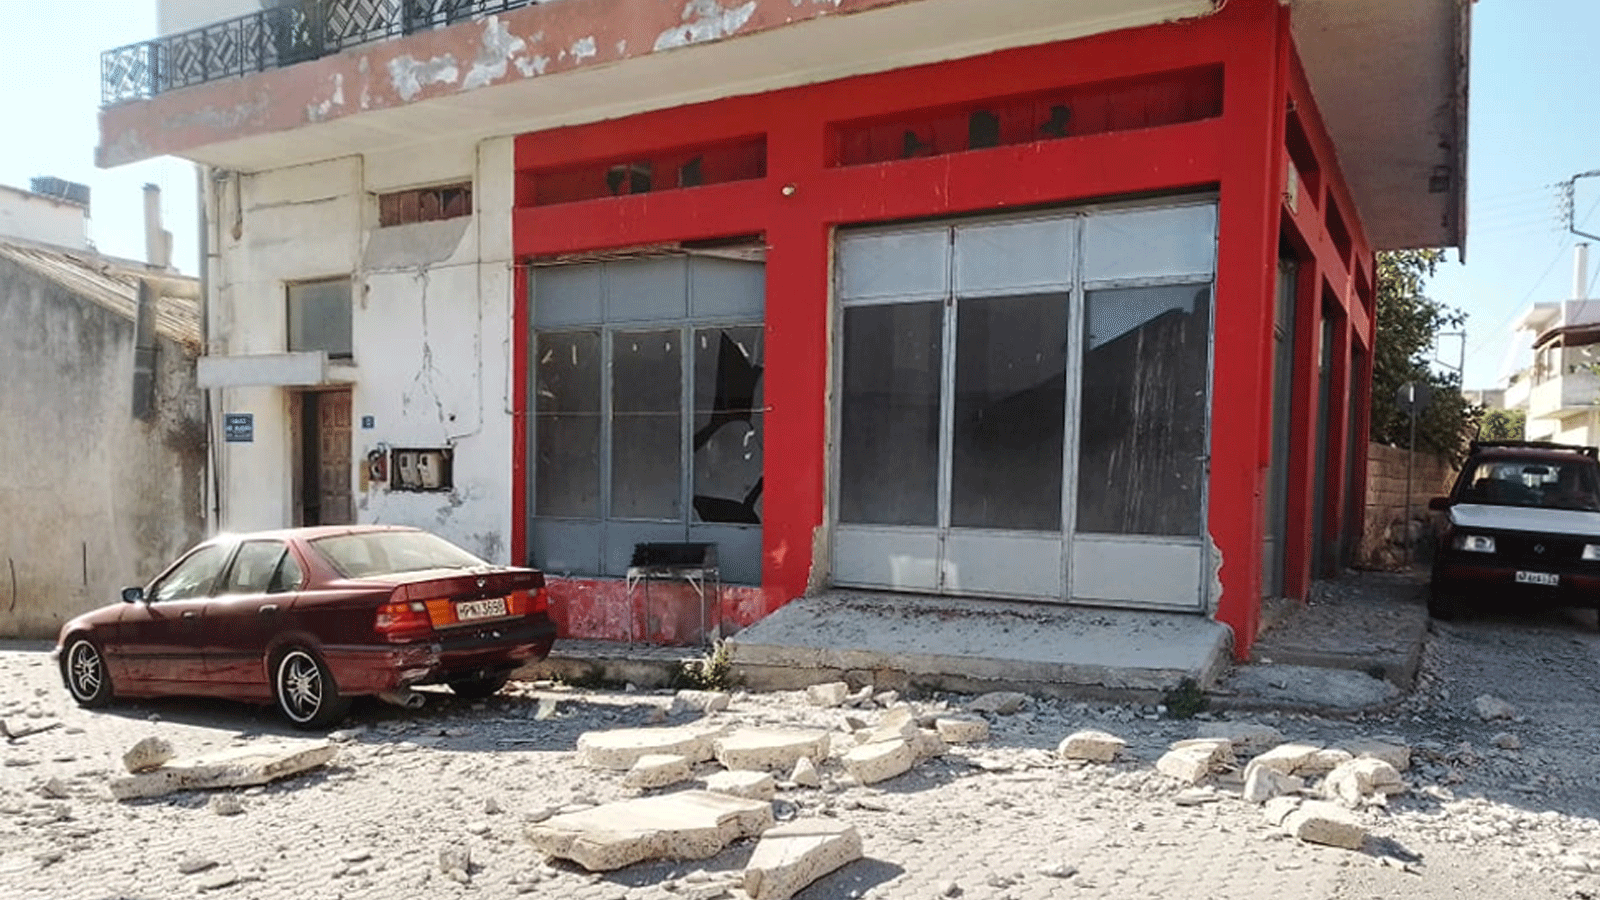 صورة متداولة عبر تويتر لأضرار وقعت في جزيرة كريت اليونانية جراء الزلزال